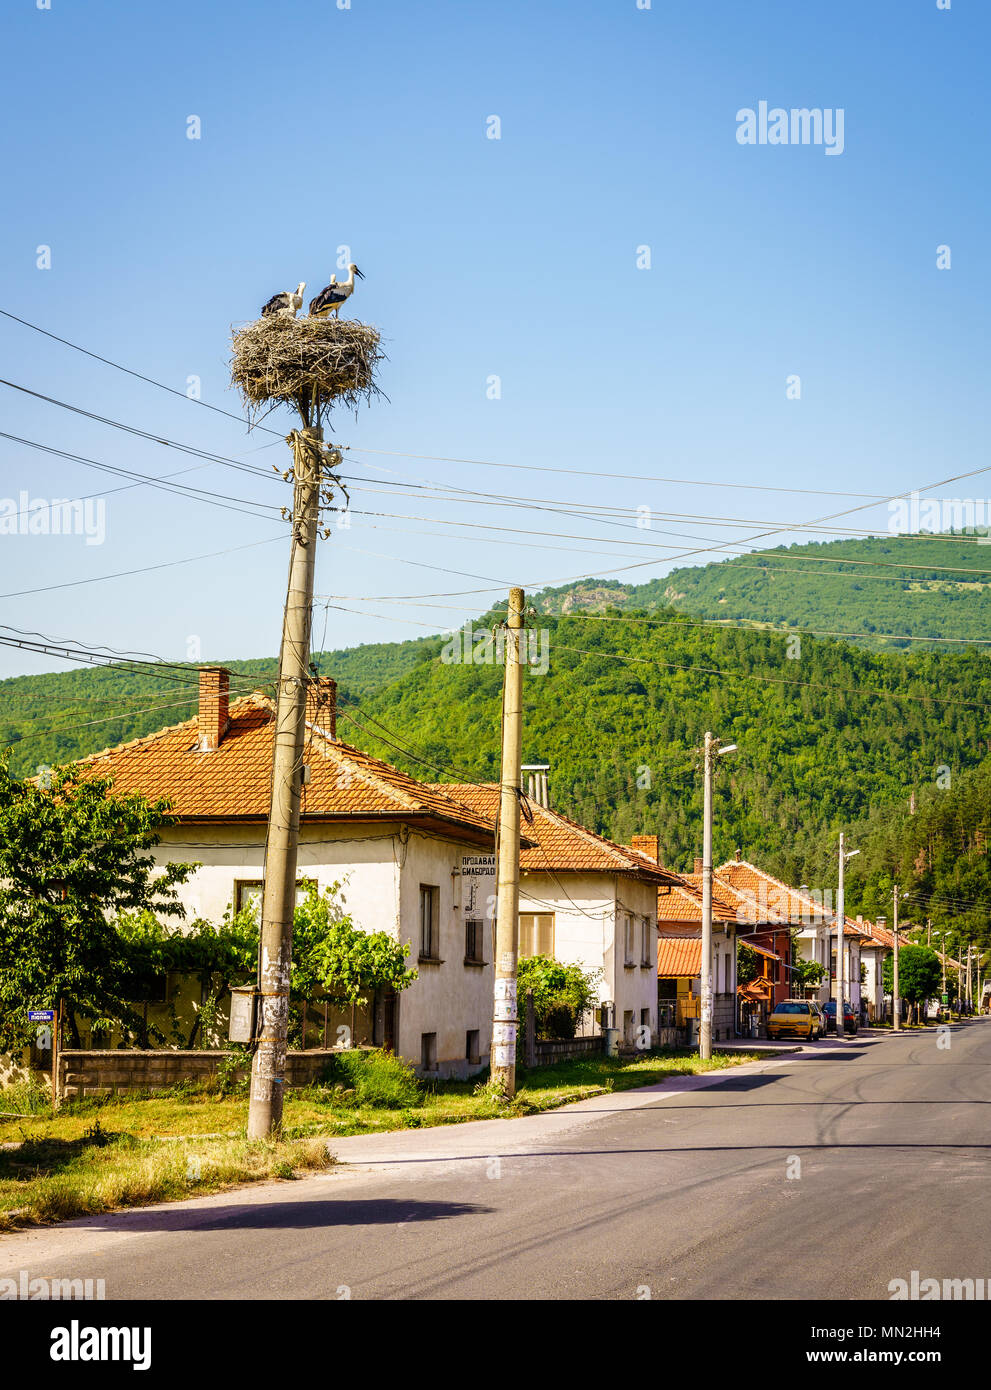 Storchennest auf einem telegrafenmast in der Stadt von Teteven, Bulgarien Stockfoto